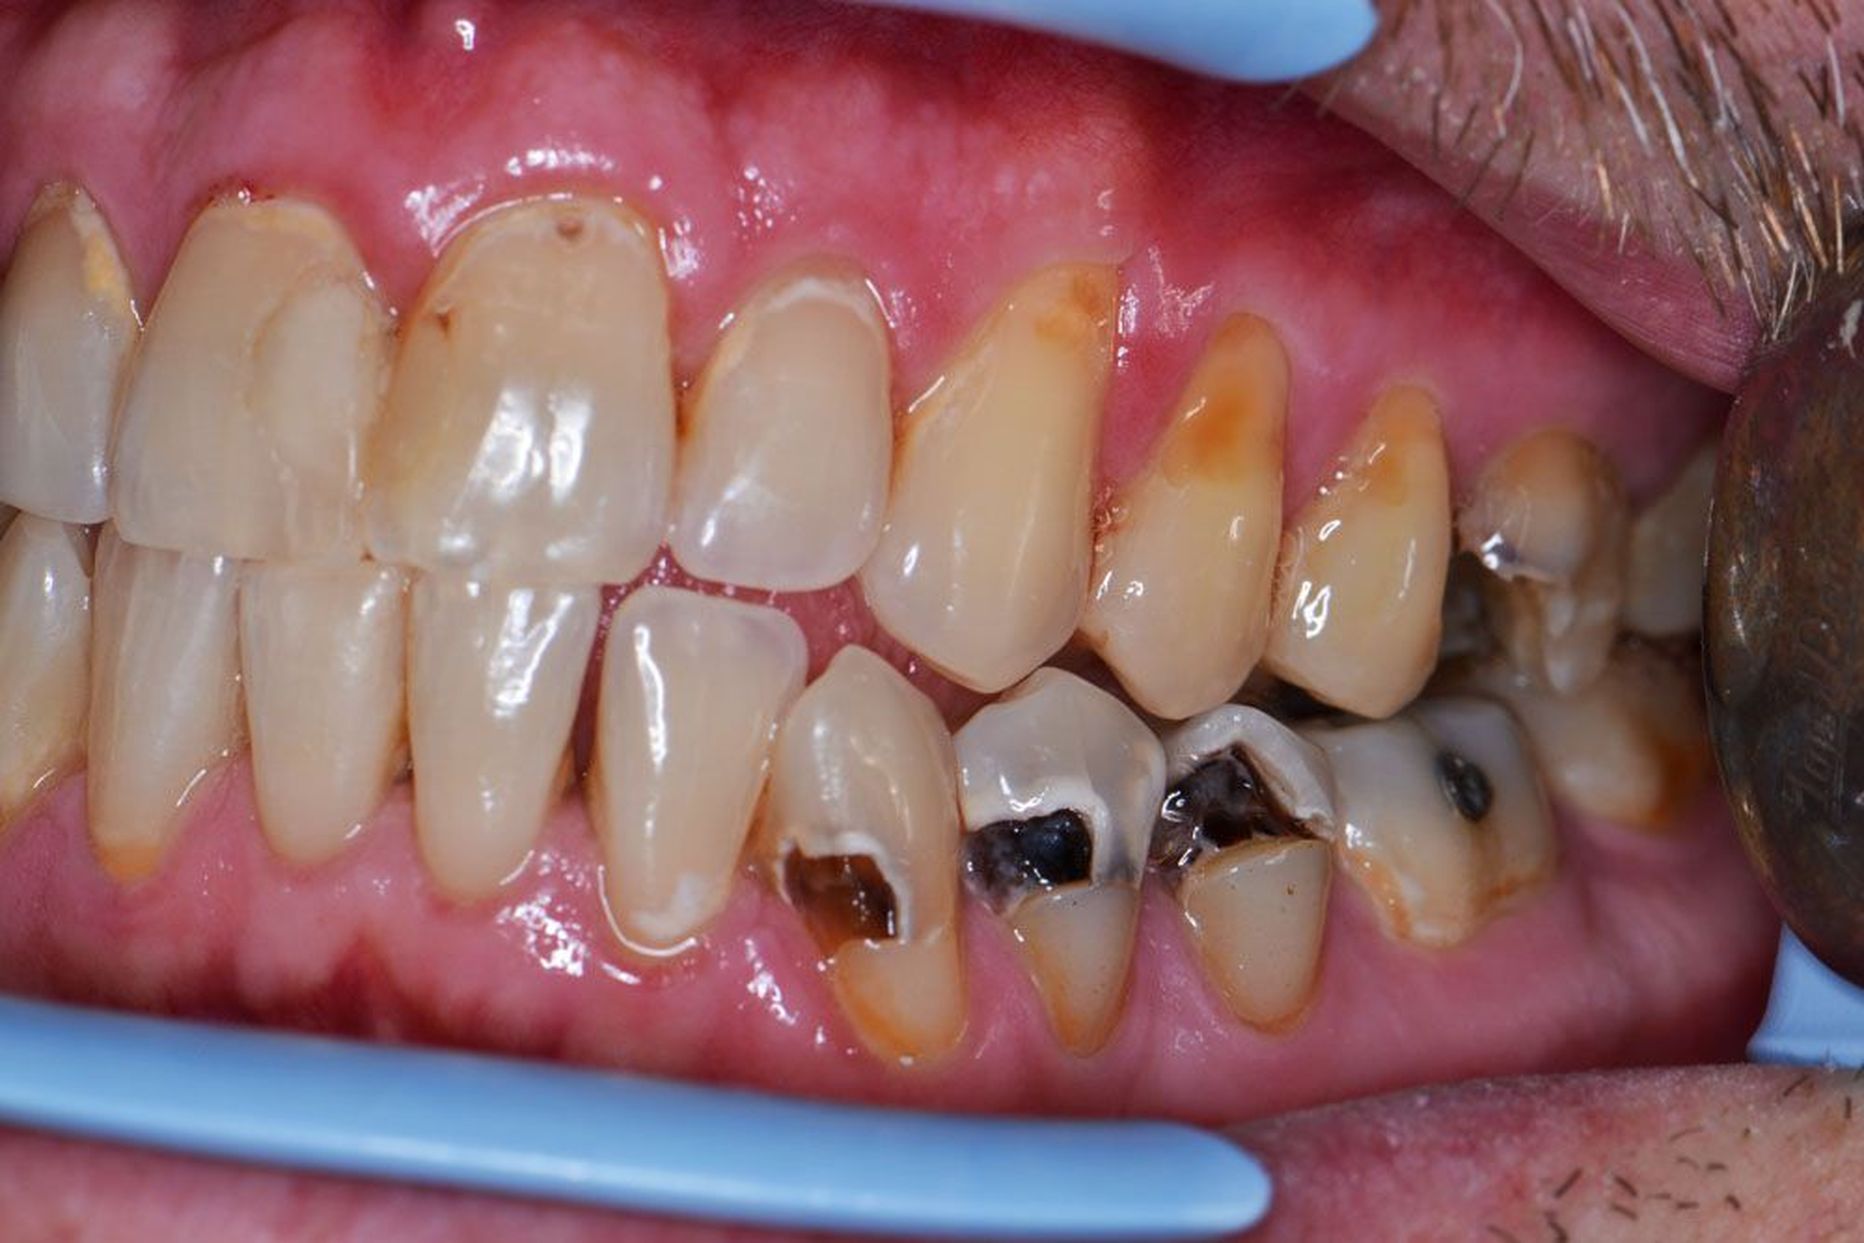 Coca-Cola-sõltlase ülalõua hammaste kaeltel on näha happesöövituse tagajärjed, alalõua hammastel on tüüpiline kaariesekahjustus, mis on hambakroonid seest õõnsaks määndanud.